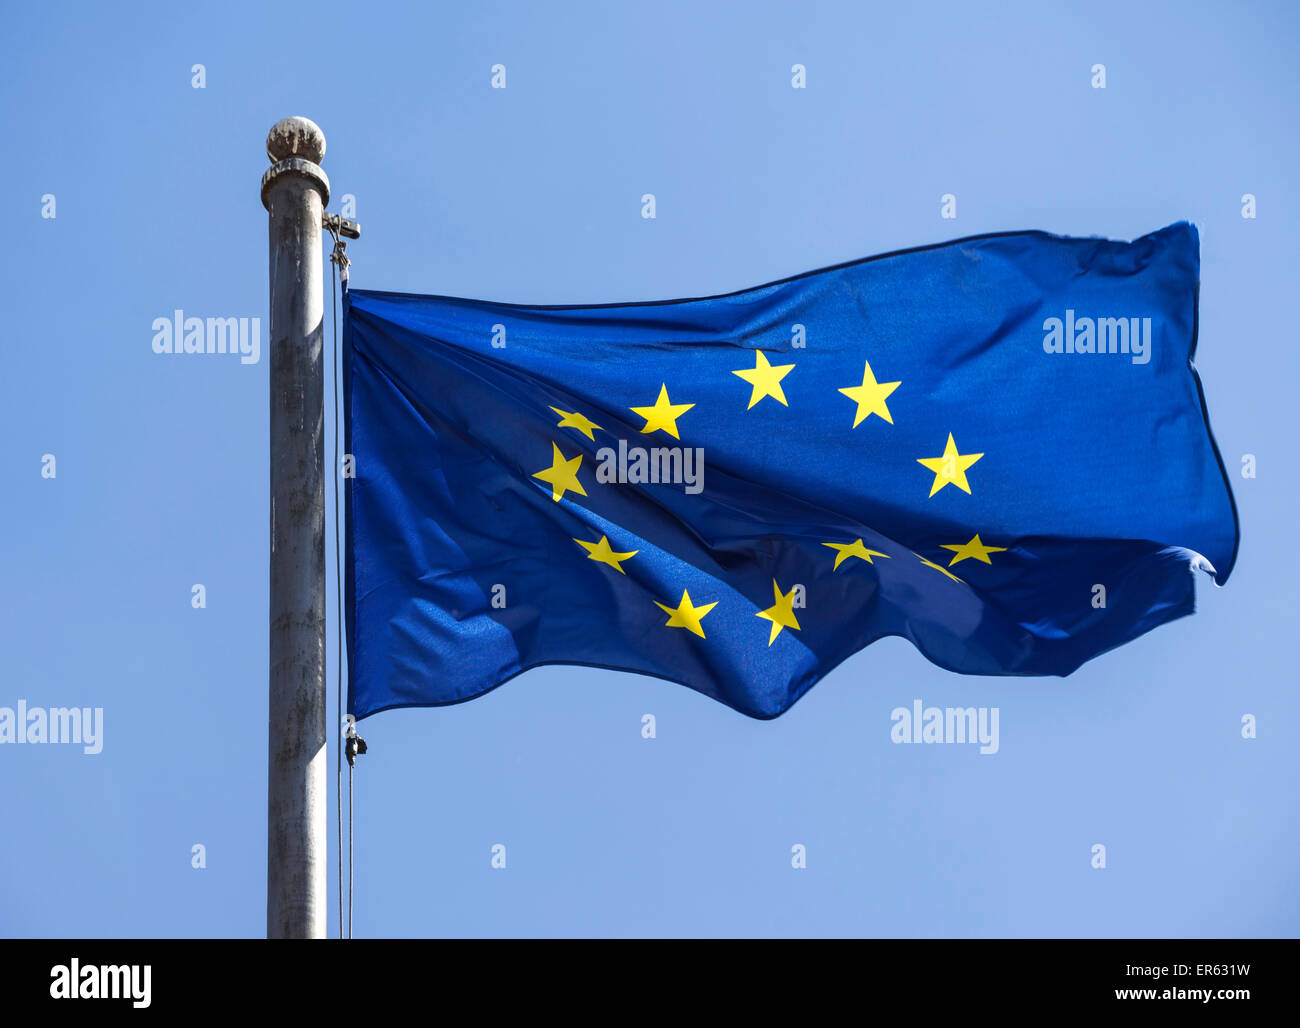 European flag, flag of the European Union Stock Photo